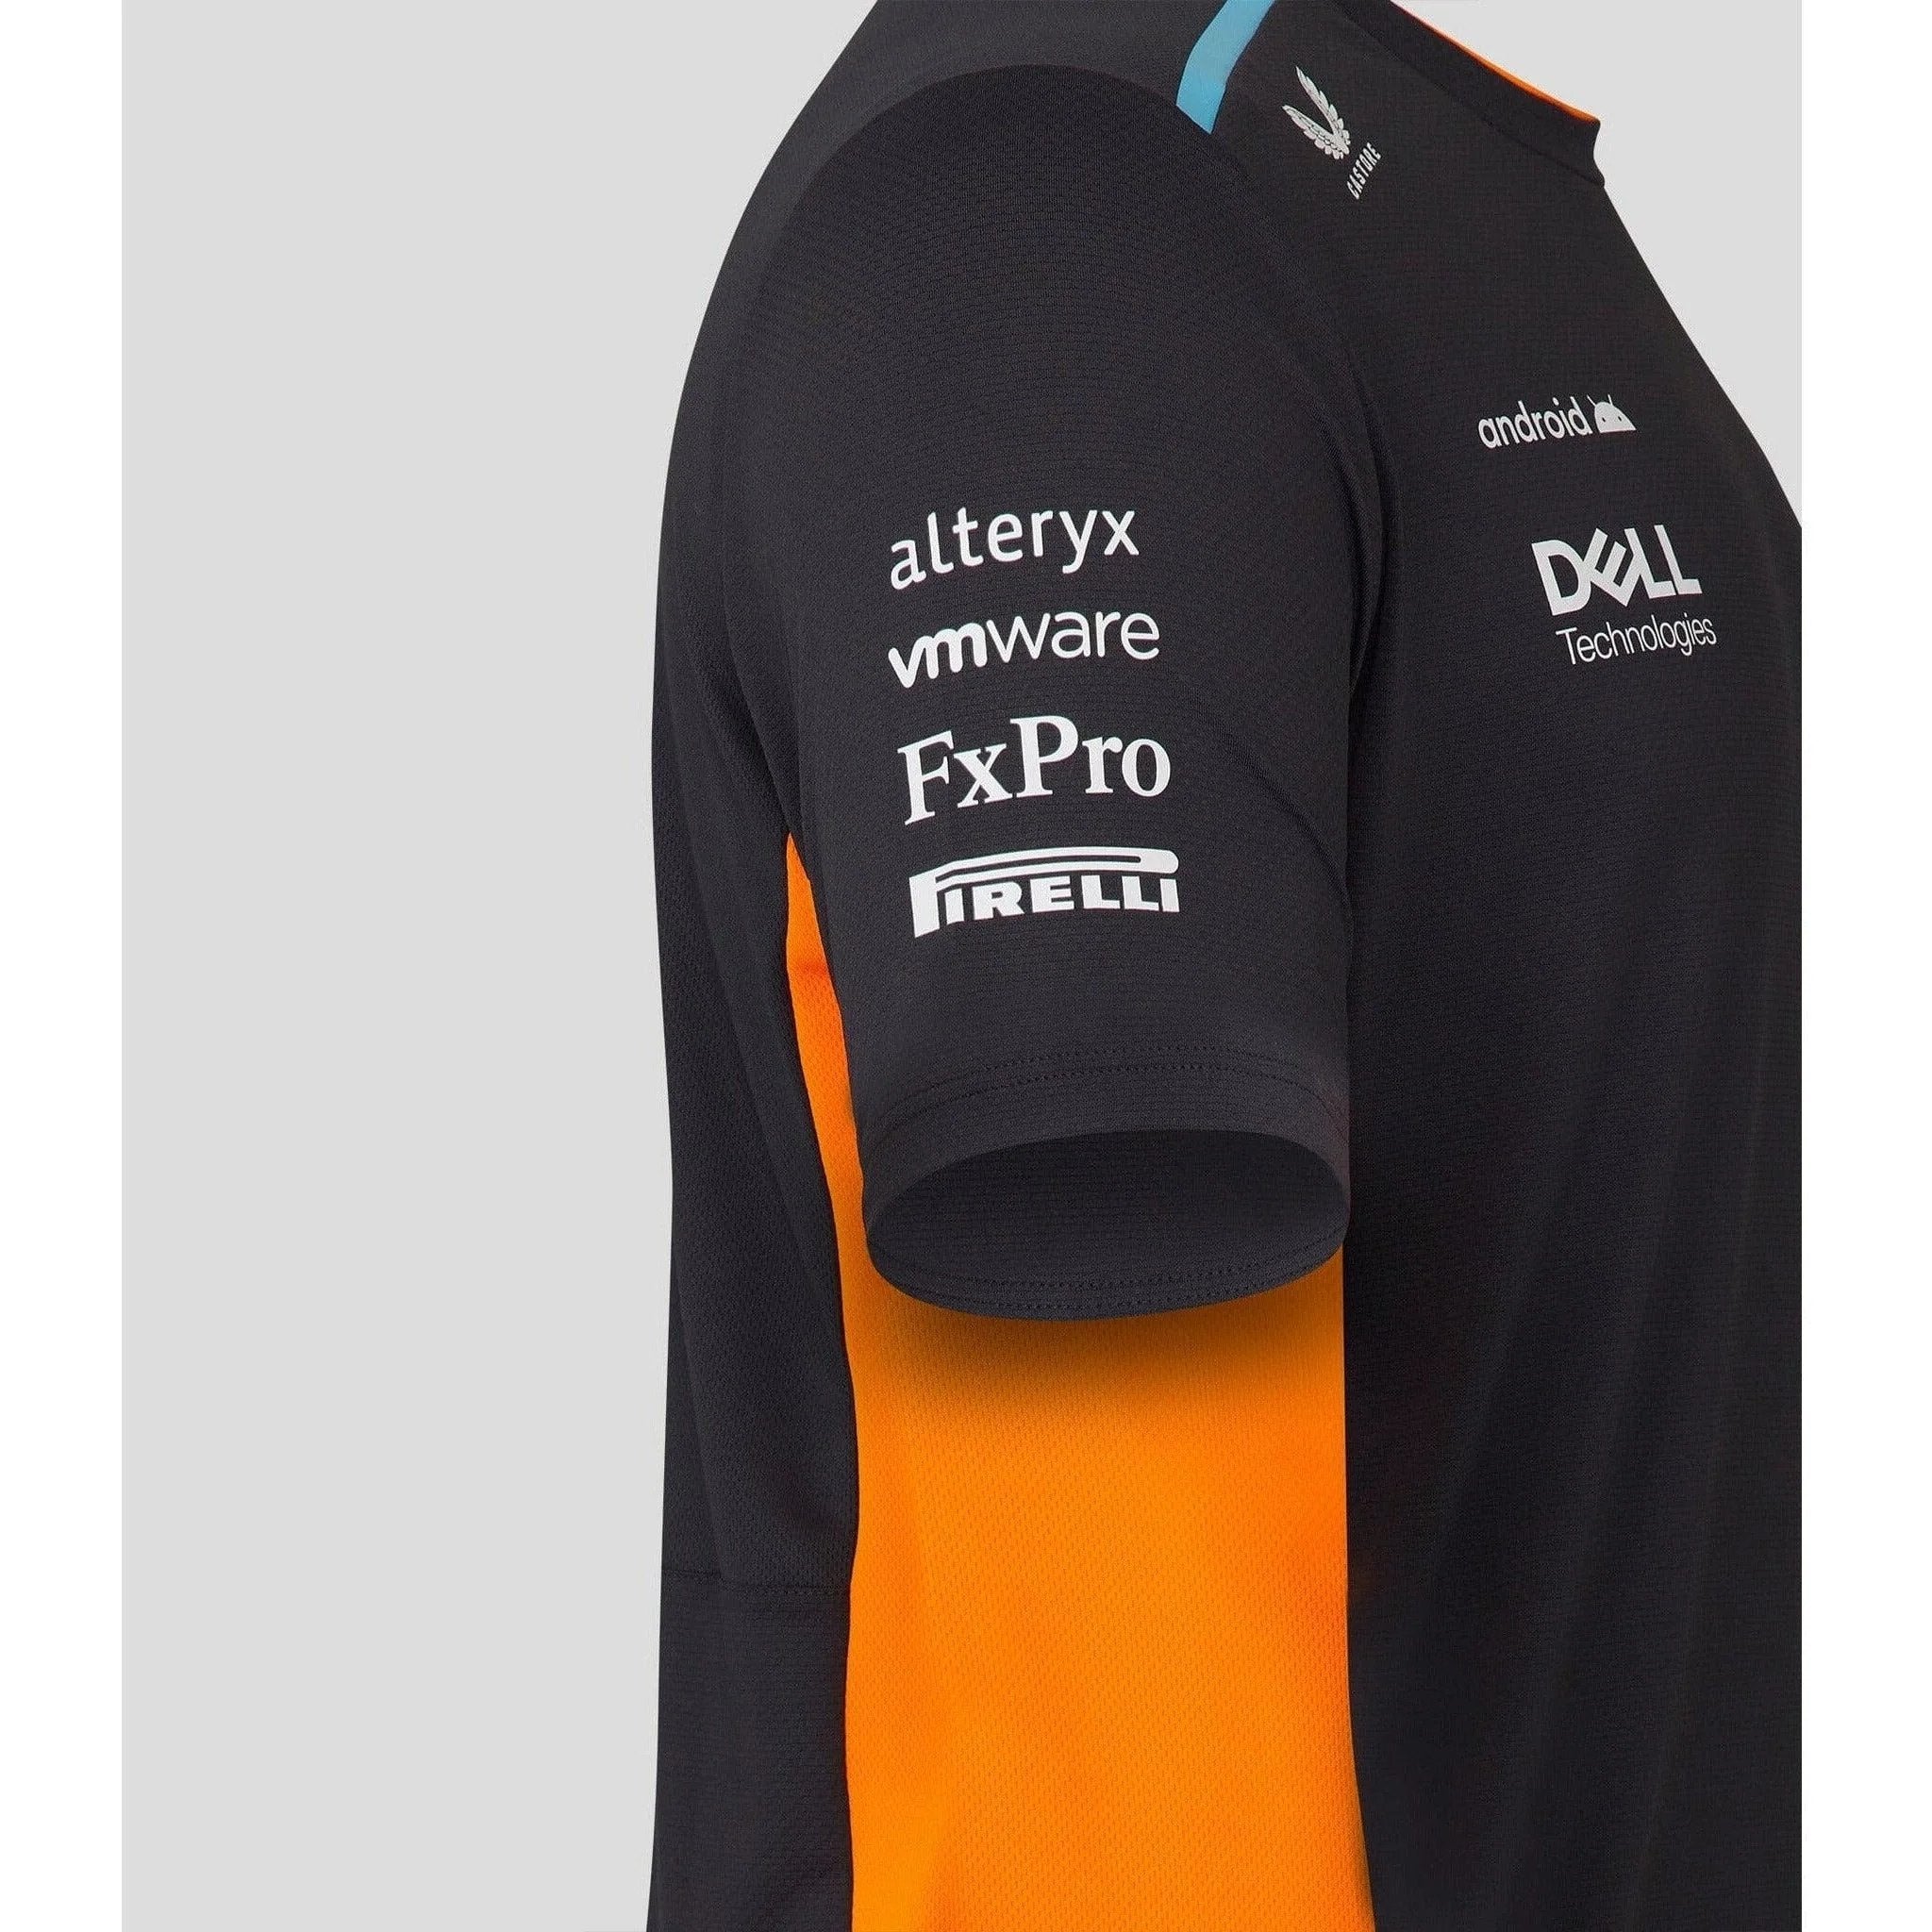 McLaren F1 Kids 2023 Lando Norris Set Up T-Shirt- Youth Papaya/Phantom